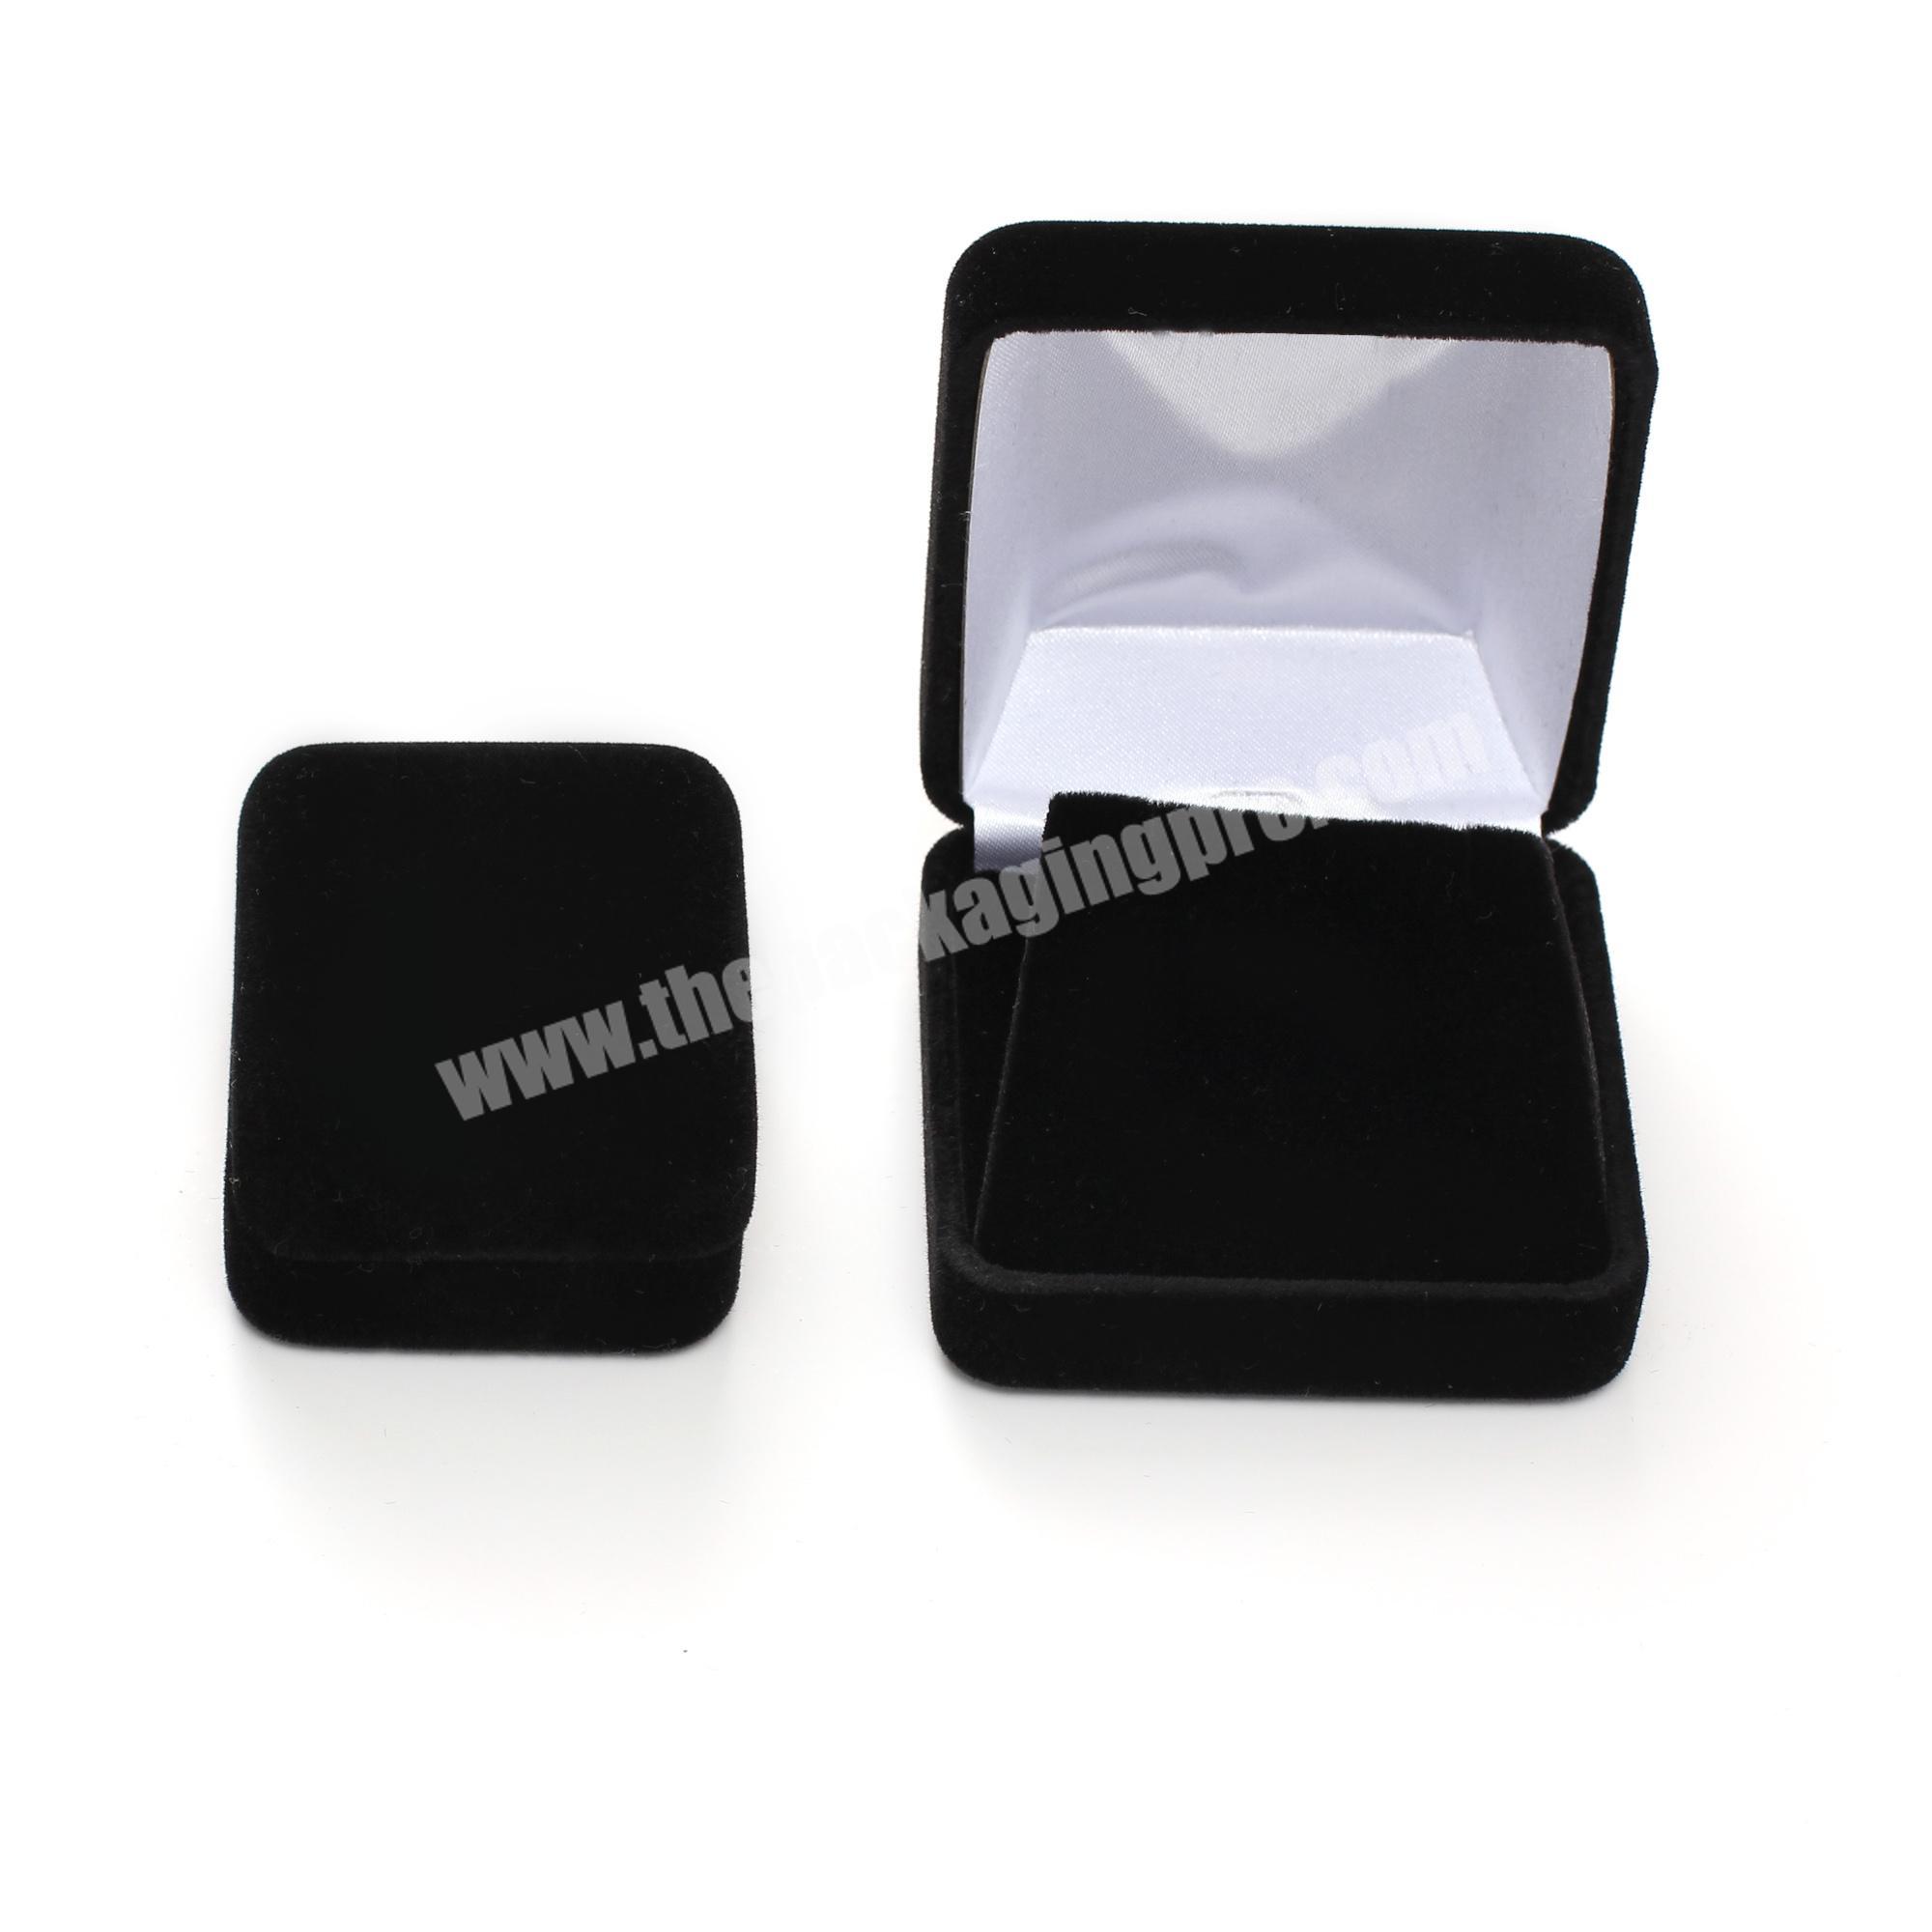 Black Velvet Jewelry Packaging Box